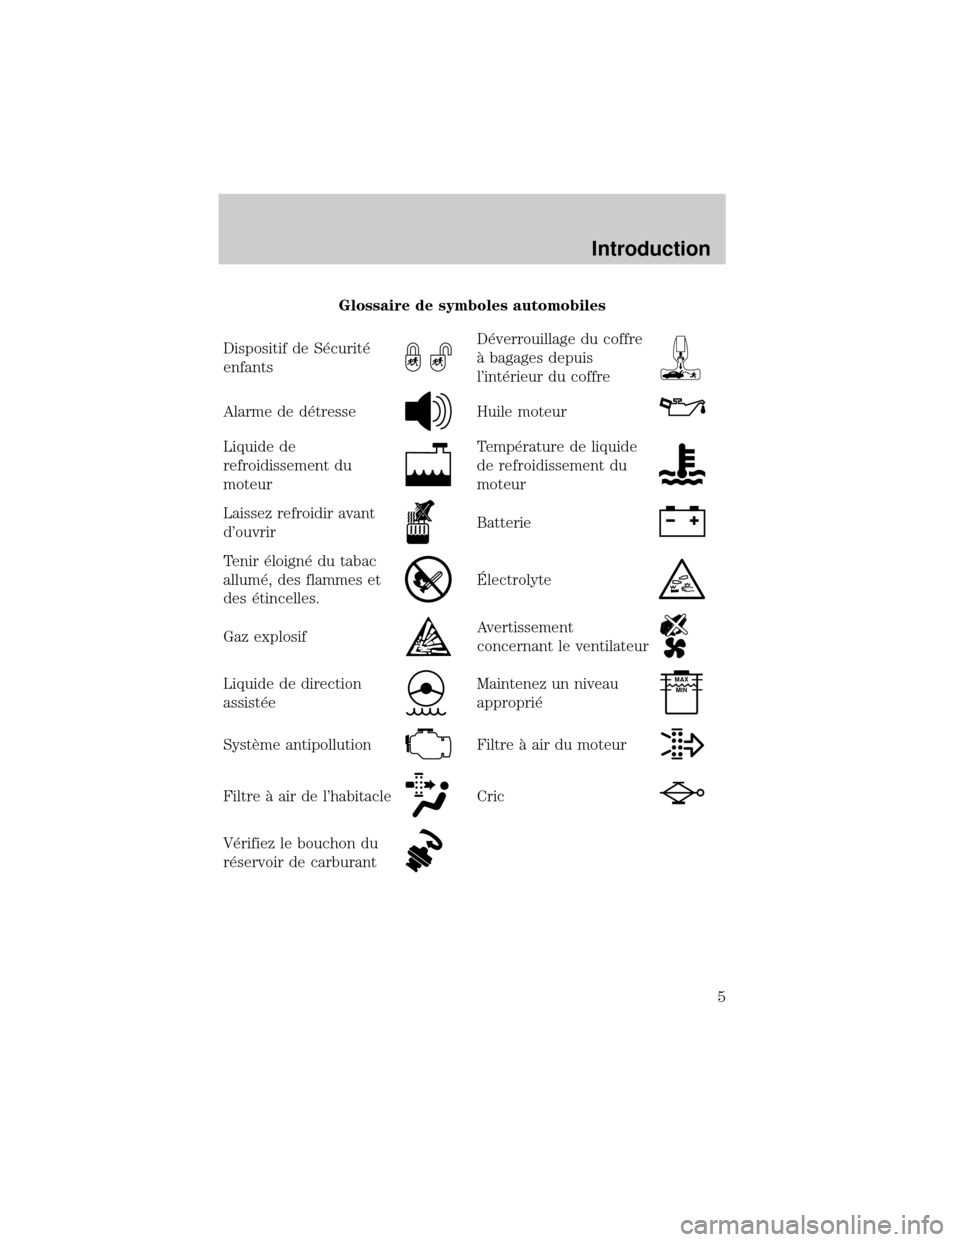 FORD EXCURSION 2001 1.G Owners Manual Glossaire de symboles automobiles
Dispositif de S×curit×
enfants
D×verrouillage du coffre
° bagages depuis
lint×rieur du coffre
Alarme de d×tresseHuile moteur
Liquide de
refroidissement du
mote